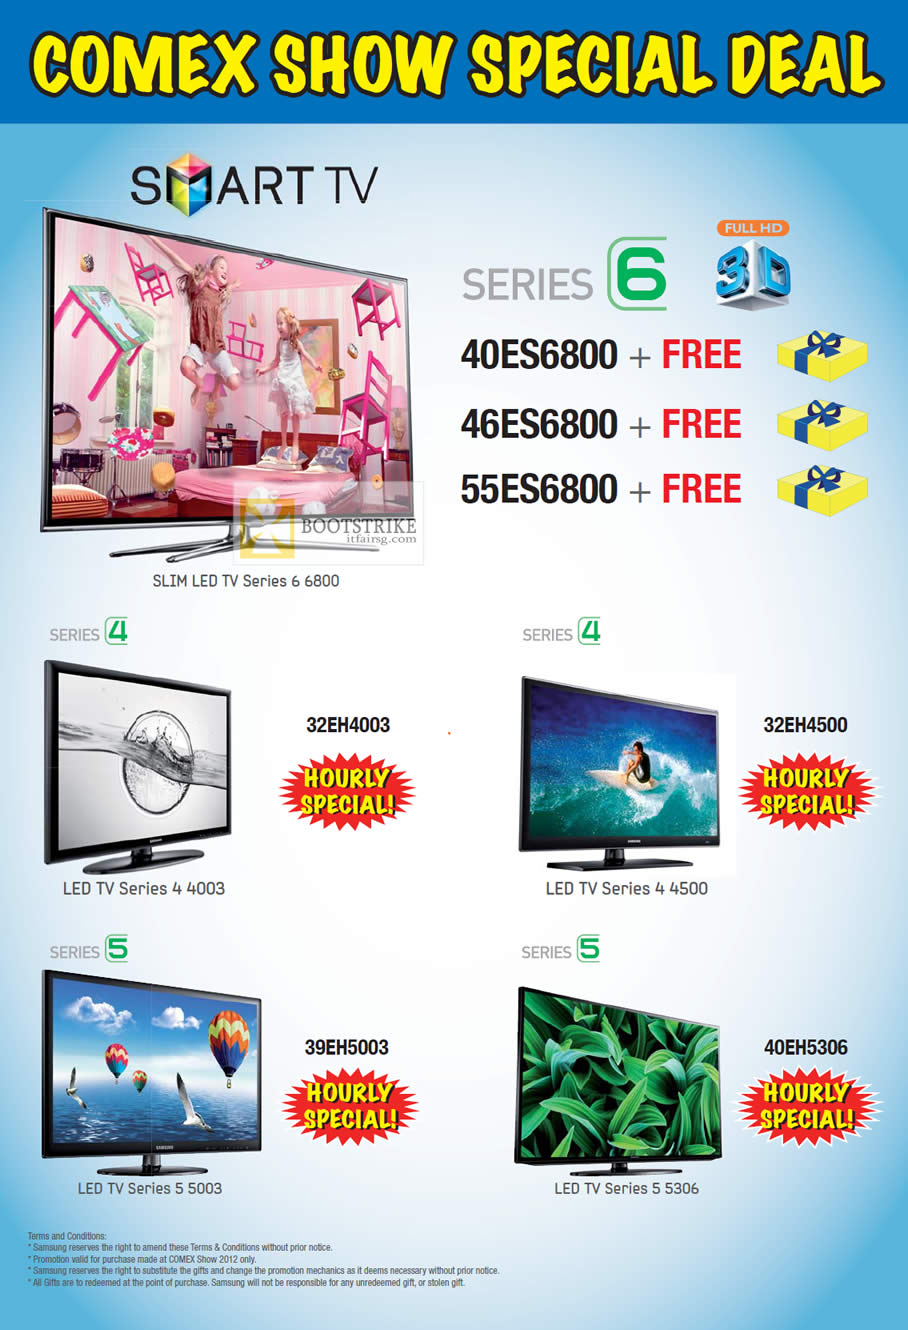 COMEX 2012 price list image brochure of Audio House Samsung Smart TV Series 6 40ES6800, 46ES6800, 55ES6800, 32EH4003, 32EH4500, 39EH5003, 40EH5306